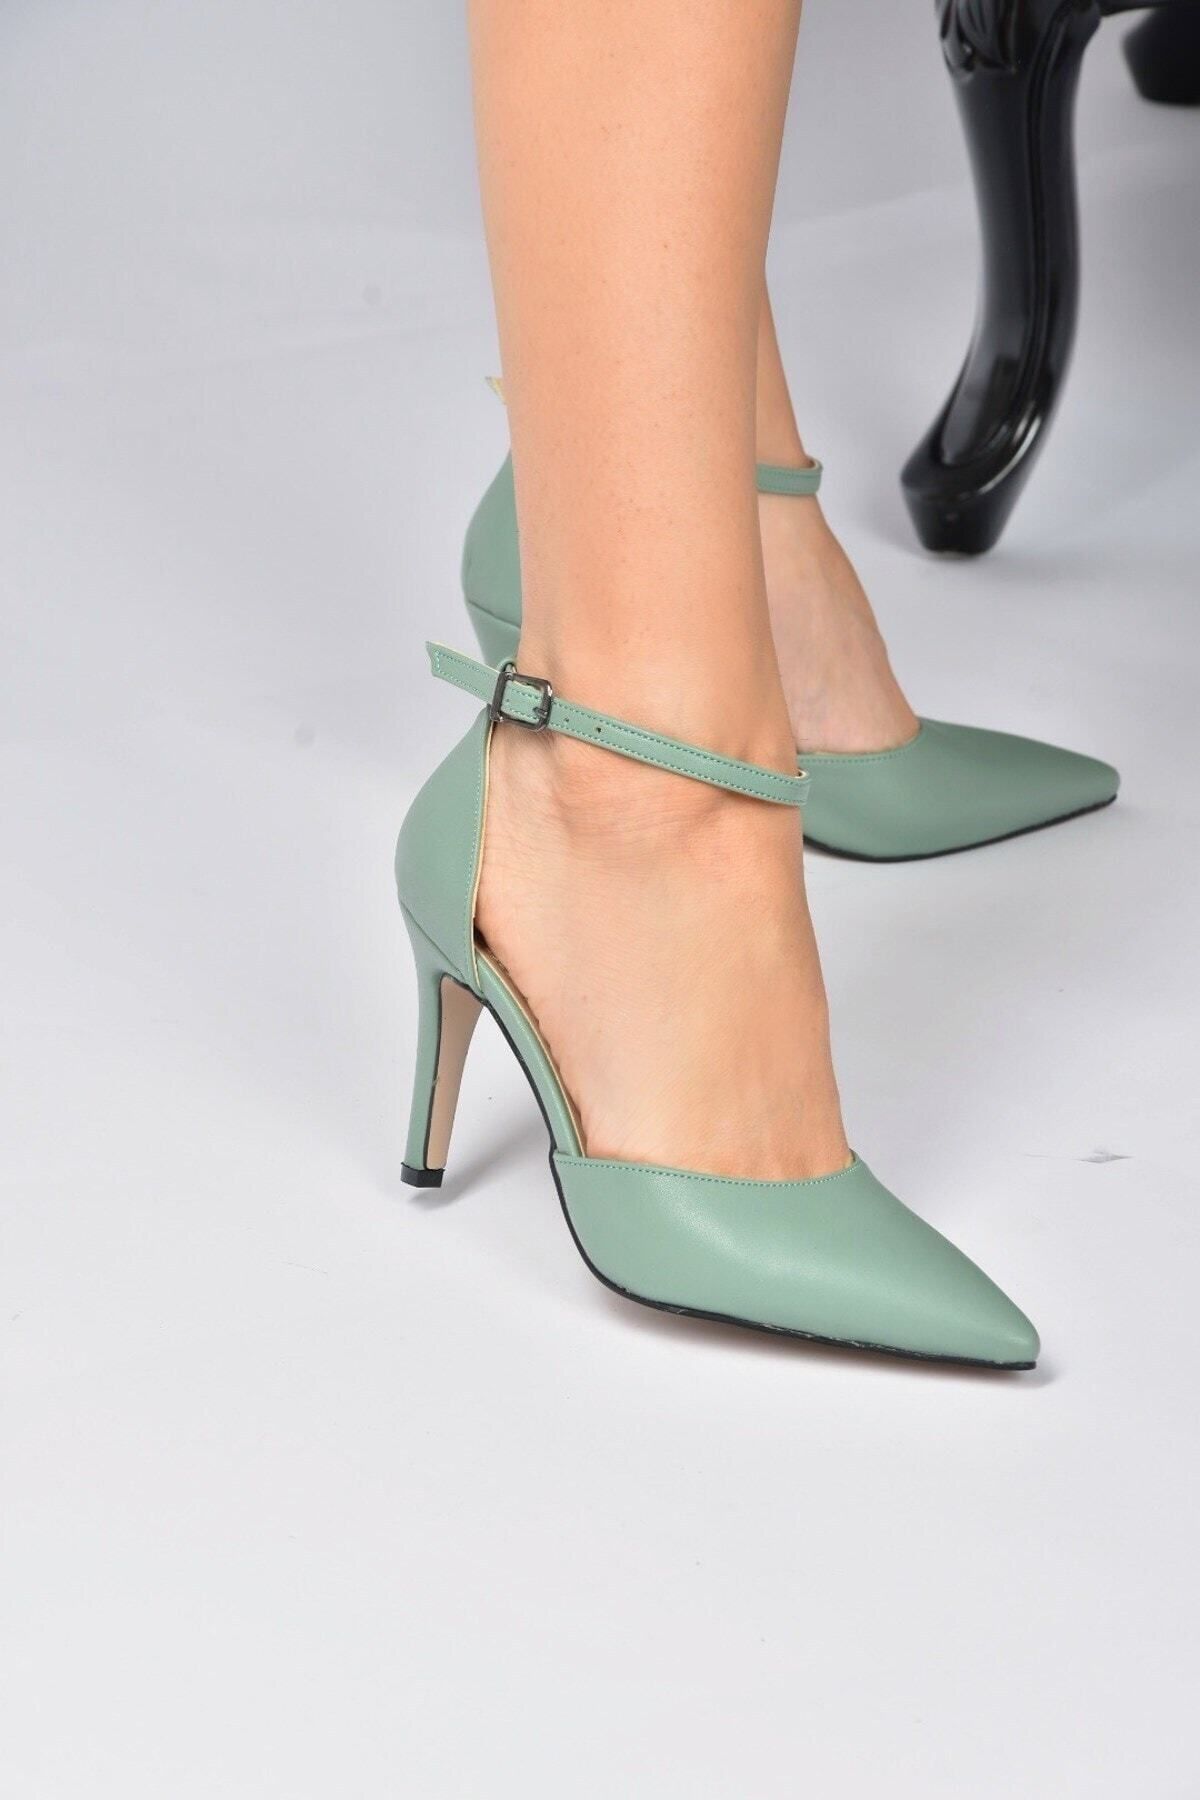 Fox Shoes Kadın Yeşil Topuklu Ayakkabı K404010709